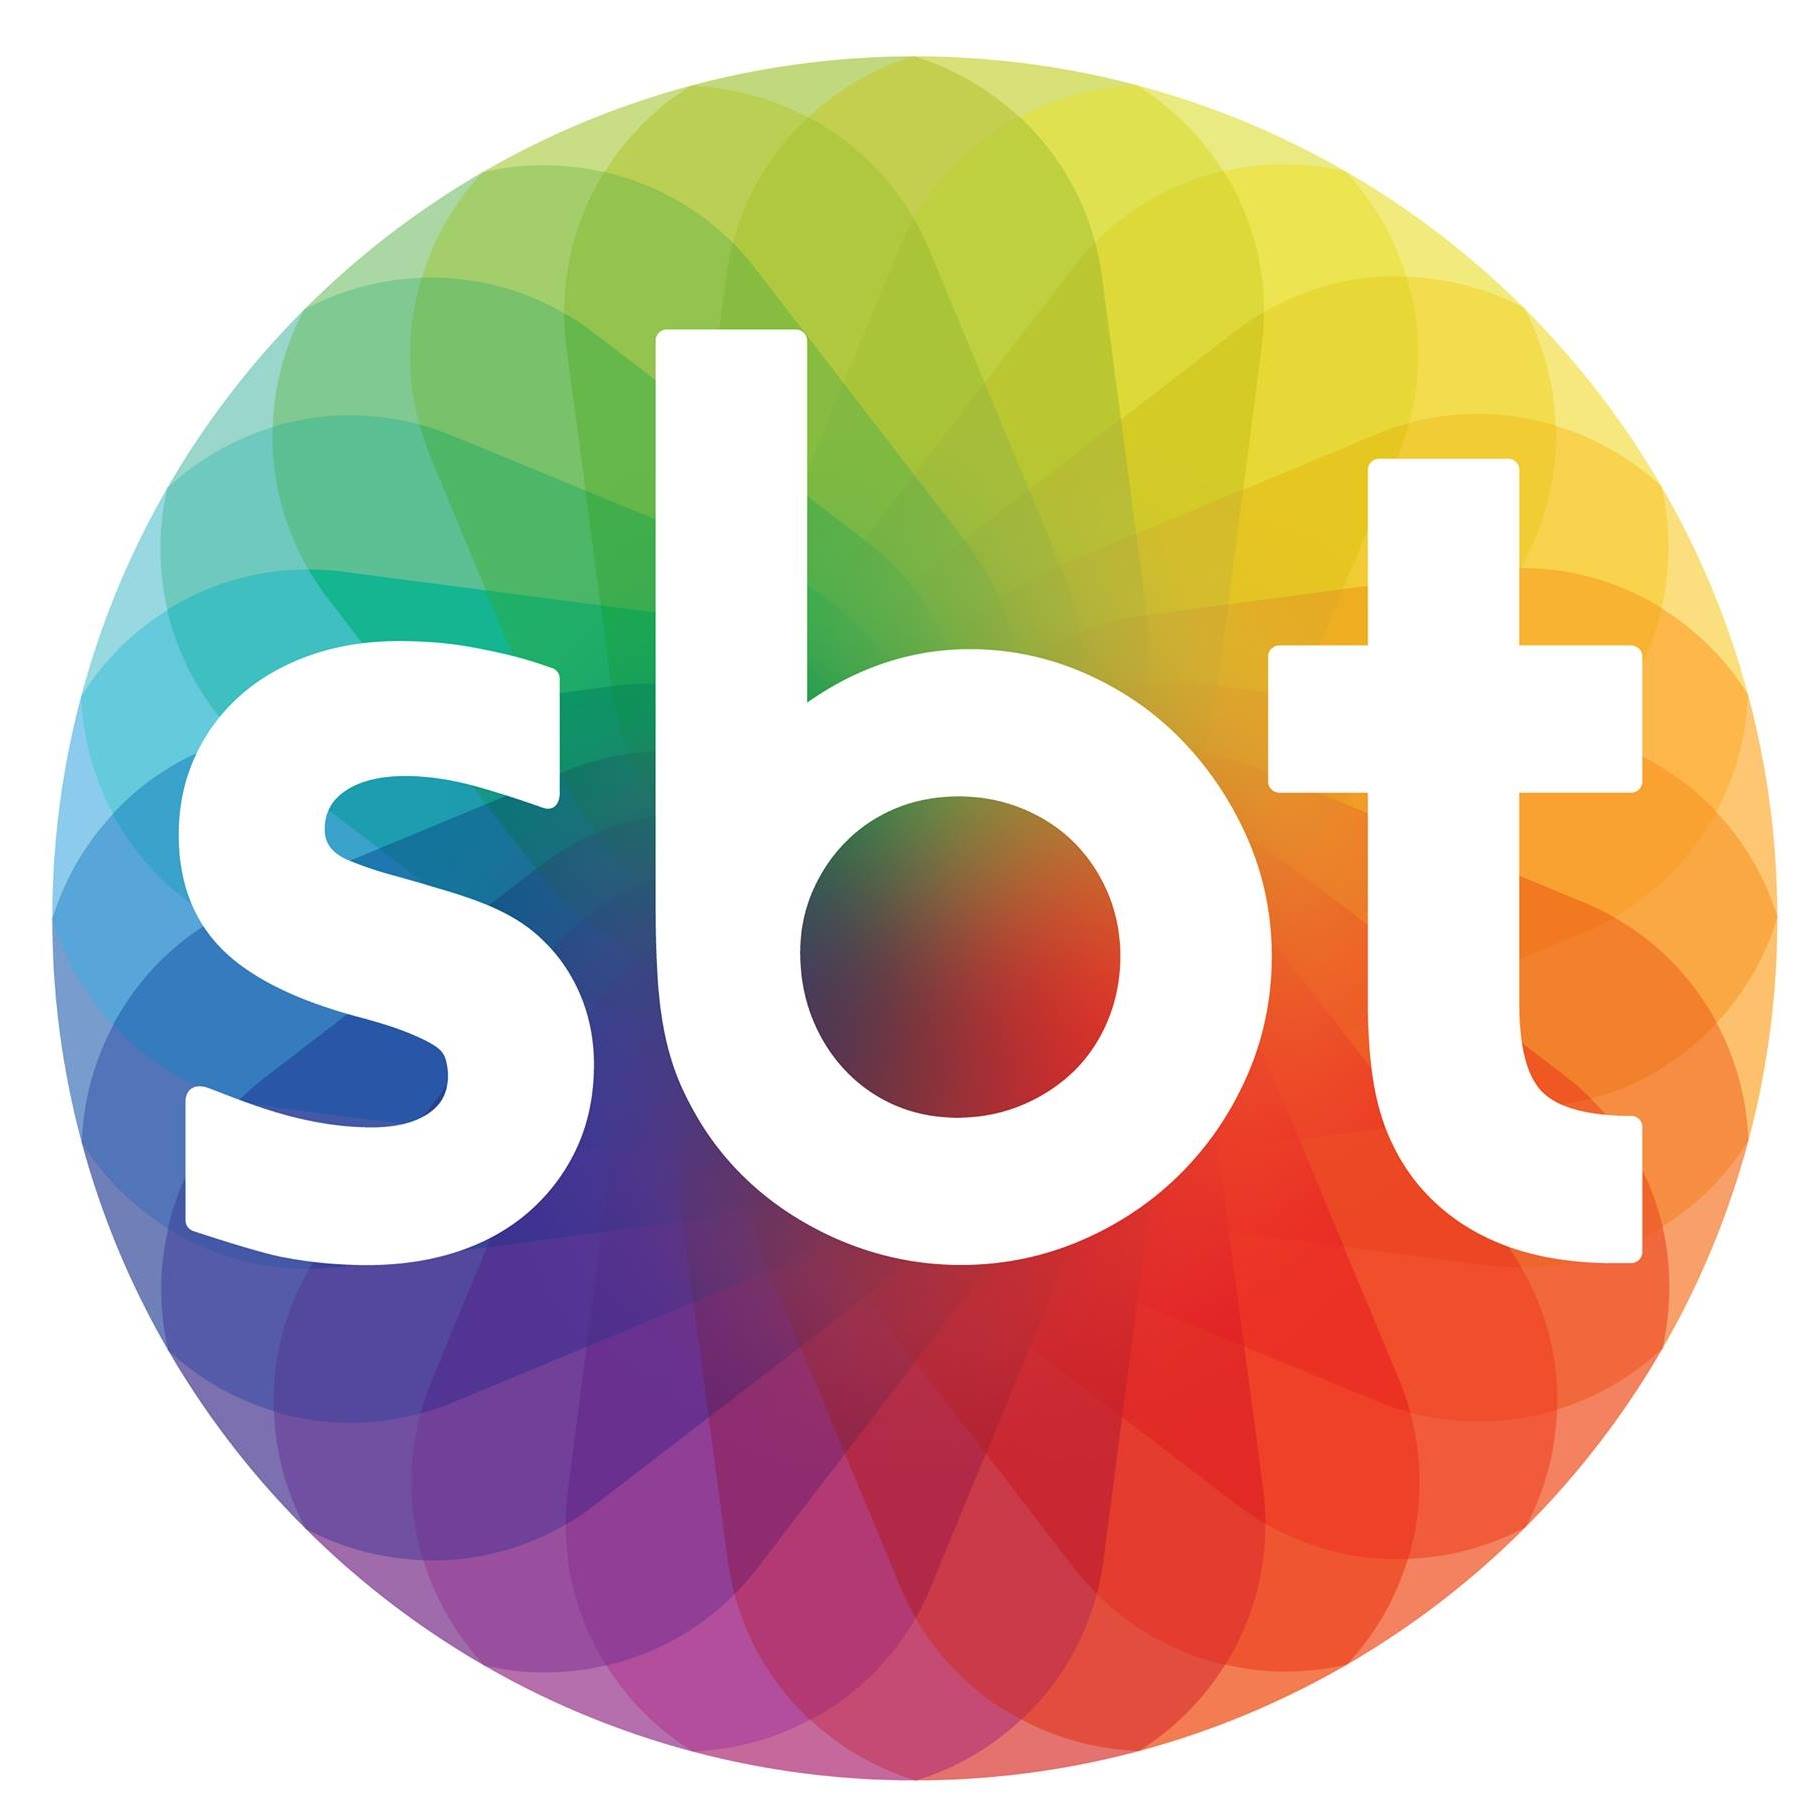 SBT está próximo de transmitir o Campeonato Carioca 2021